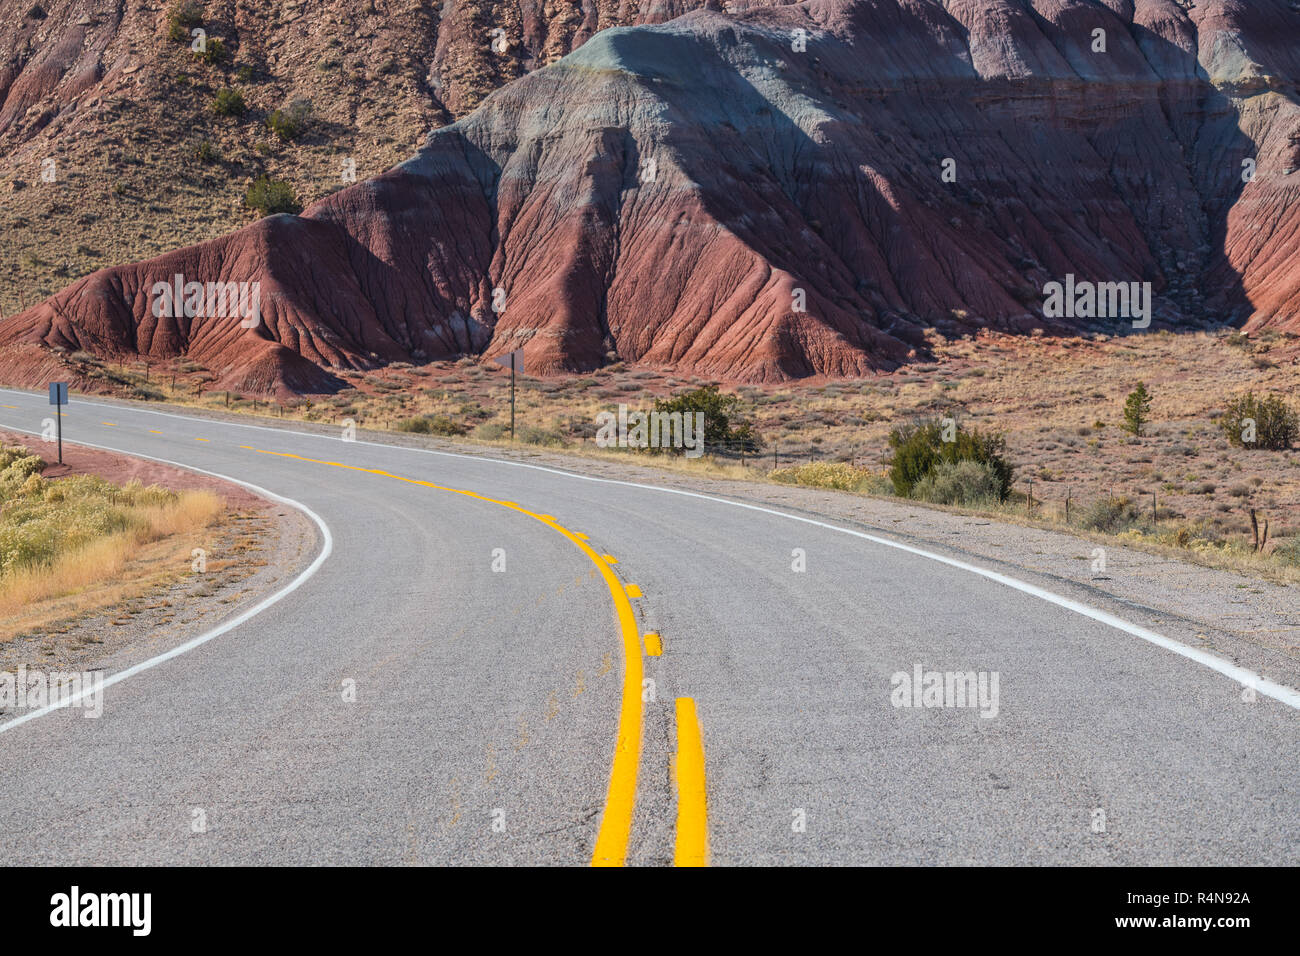 La curvatura strada che conduce in un variopinto paesaggio del deserto vicino Abiquiu, Nuovo Messico del sud-ovest americano Foto Stock